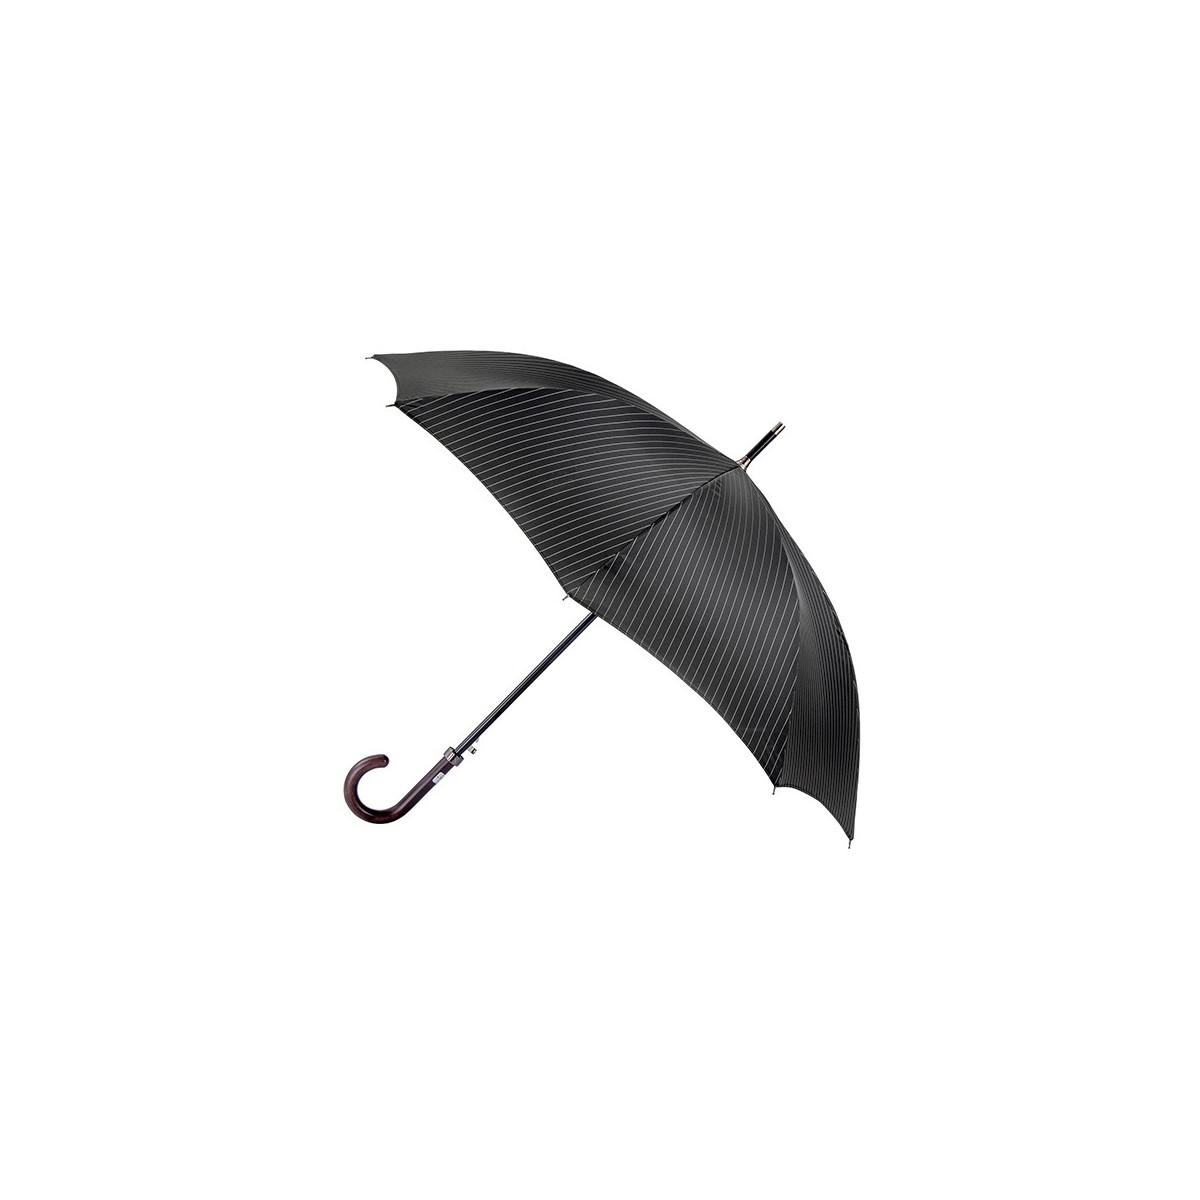 Parapluie Canne Long Semi Automatique Noir - Esprit Référence : 14506